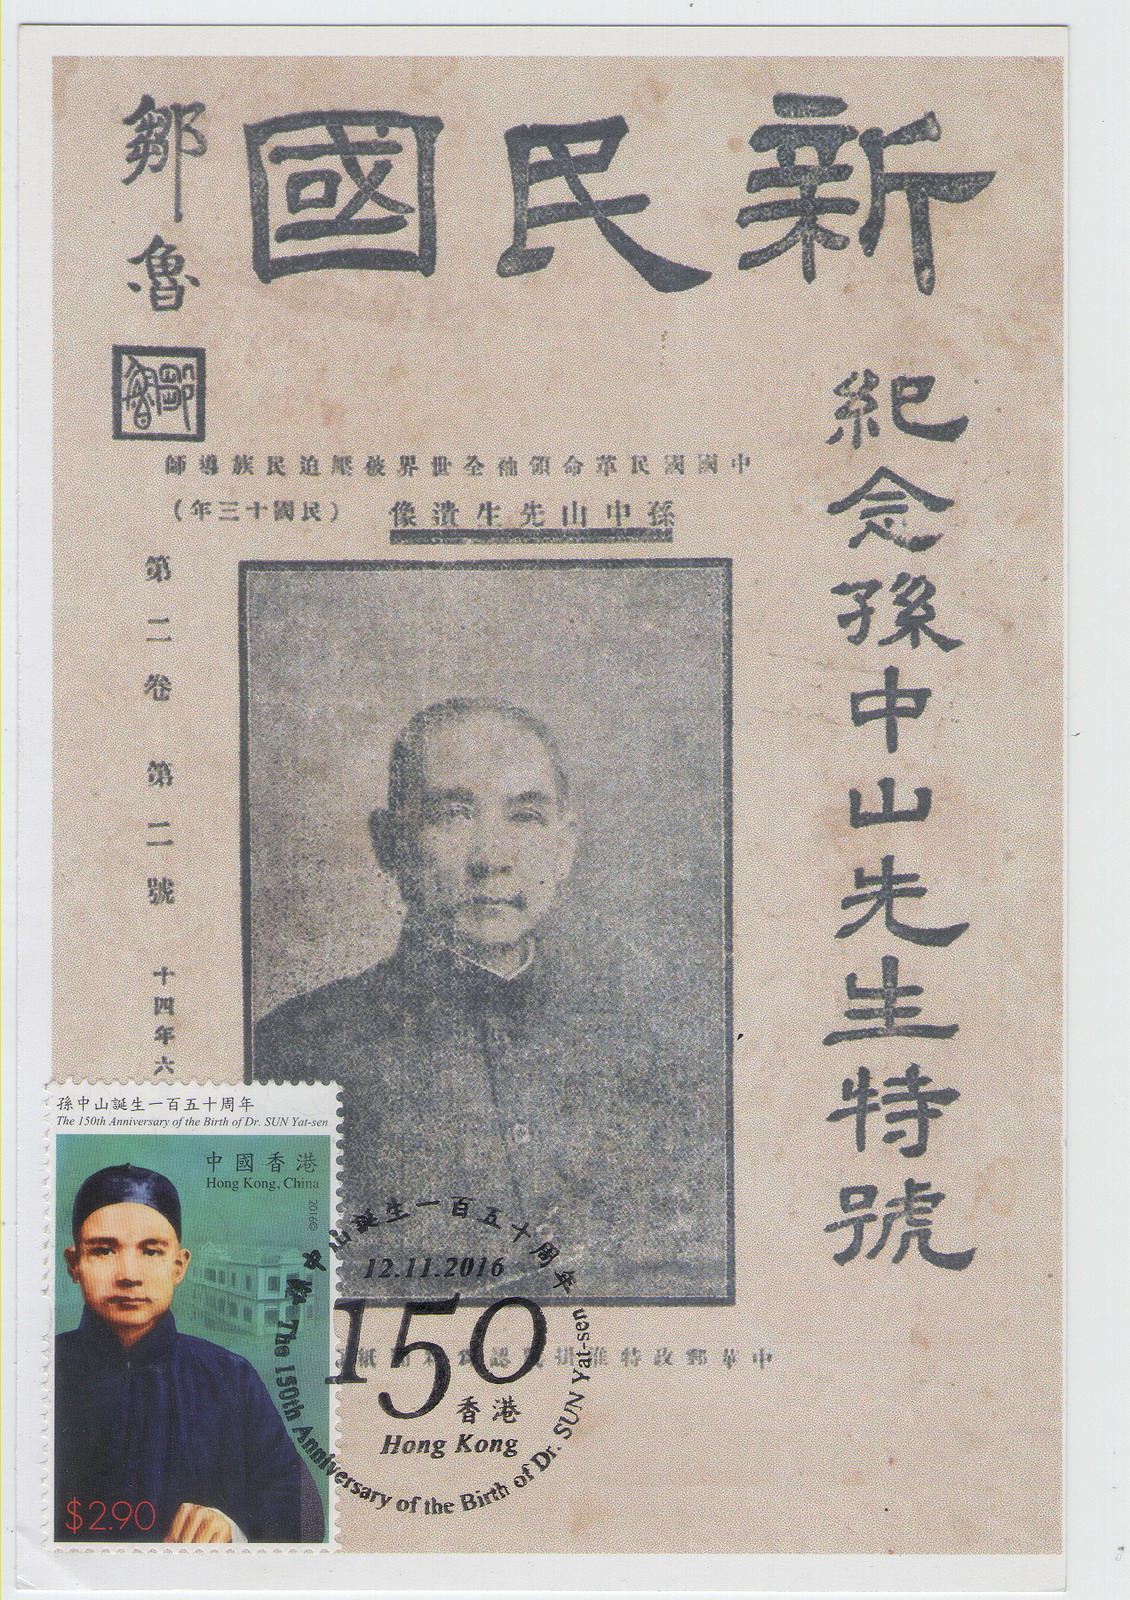 香港孙中山诞生150周年纪念-极限片-D2-A_resize.jpg